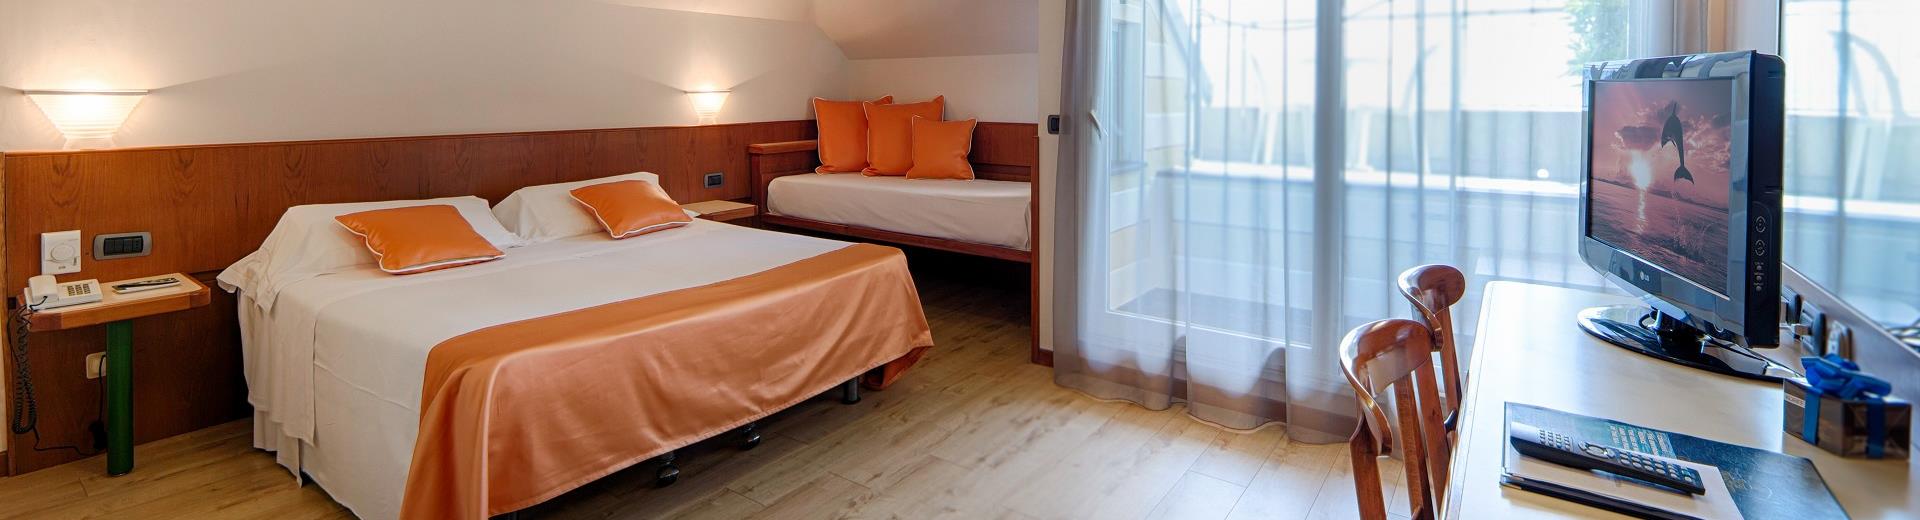 Scopri le camere dell''Hotel Regina Elena a Santa Margherita Ligure